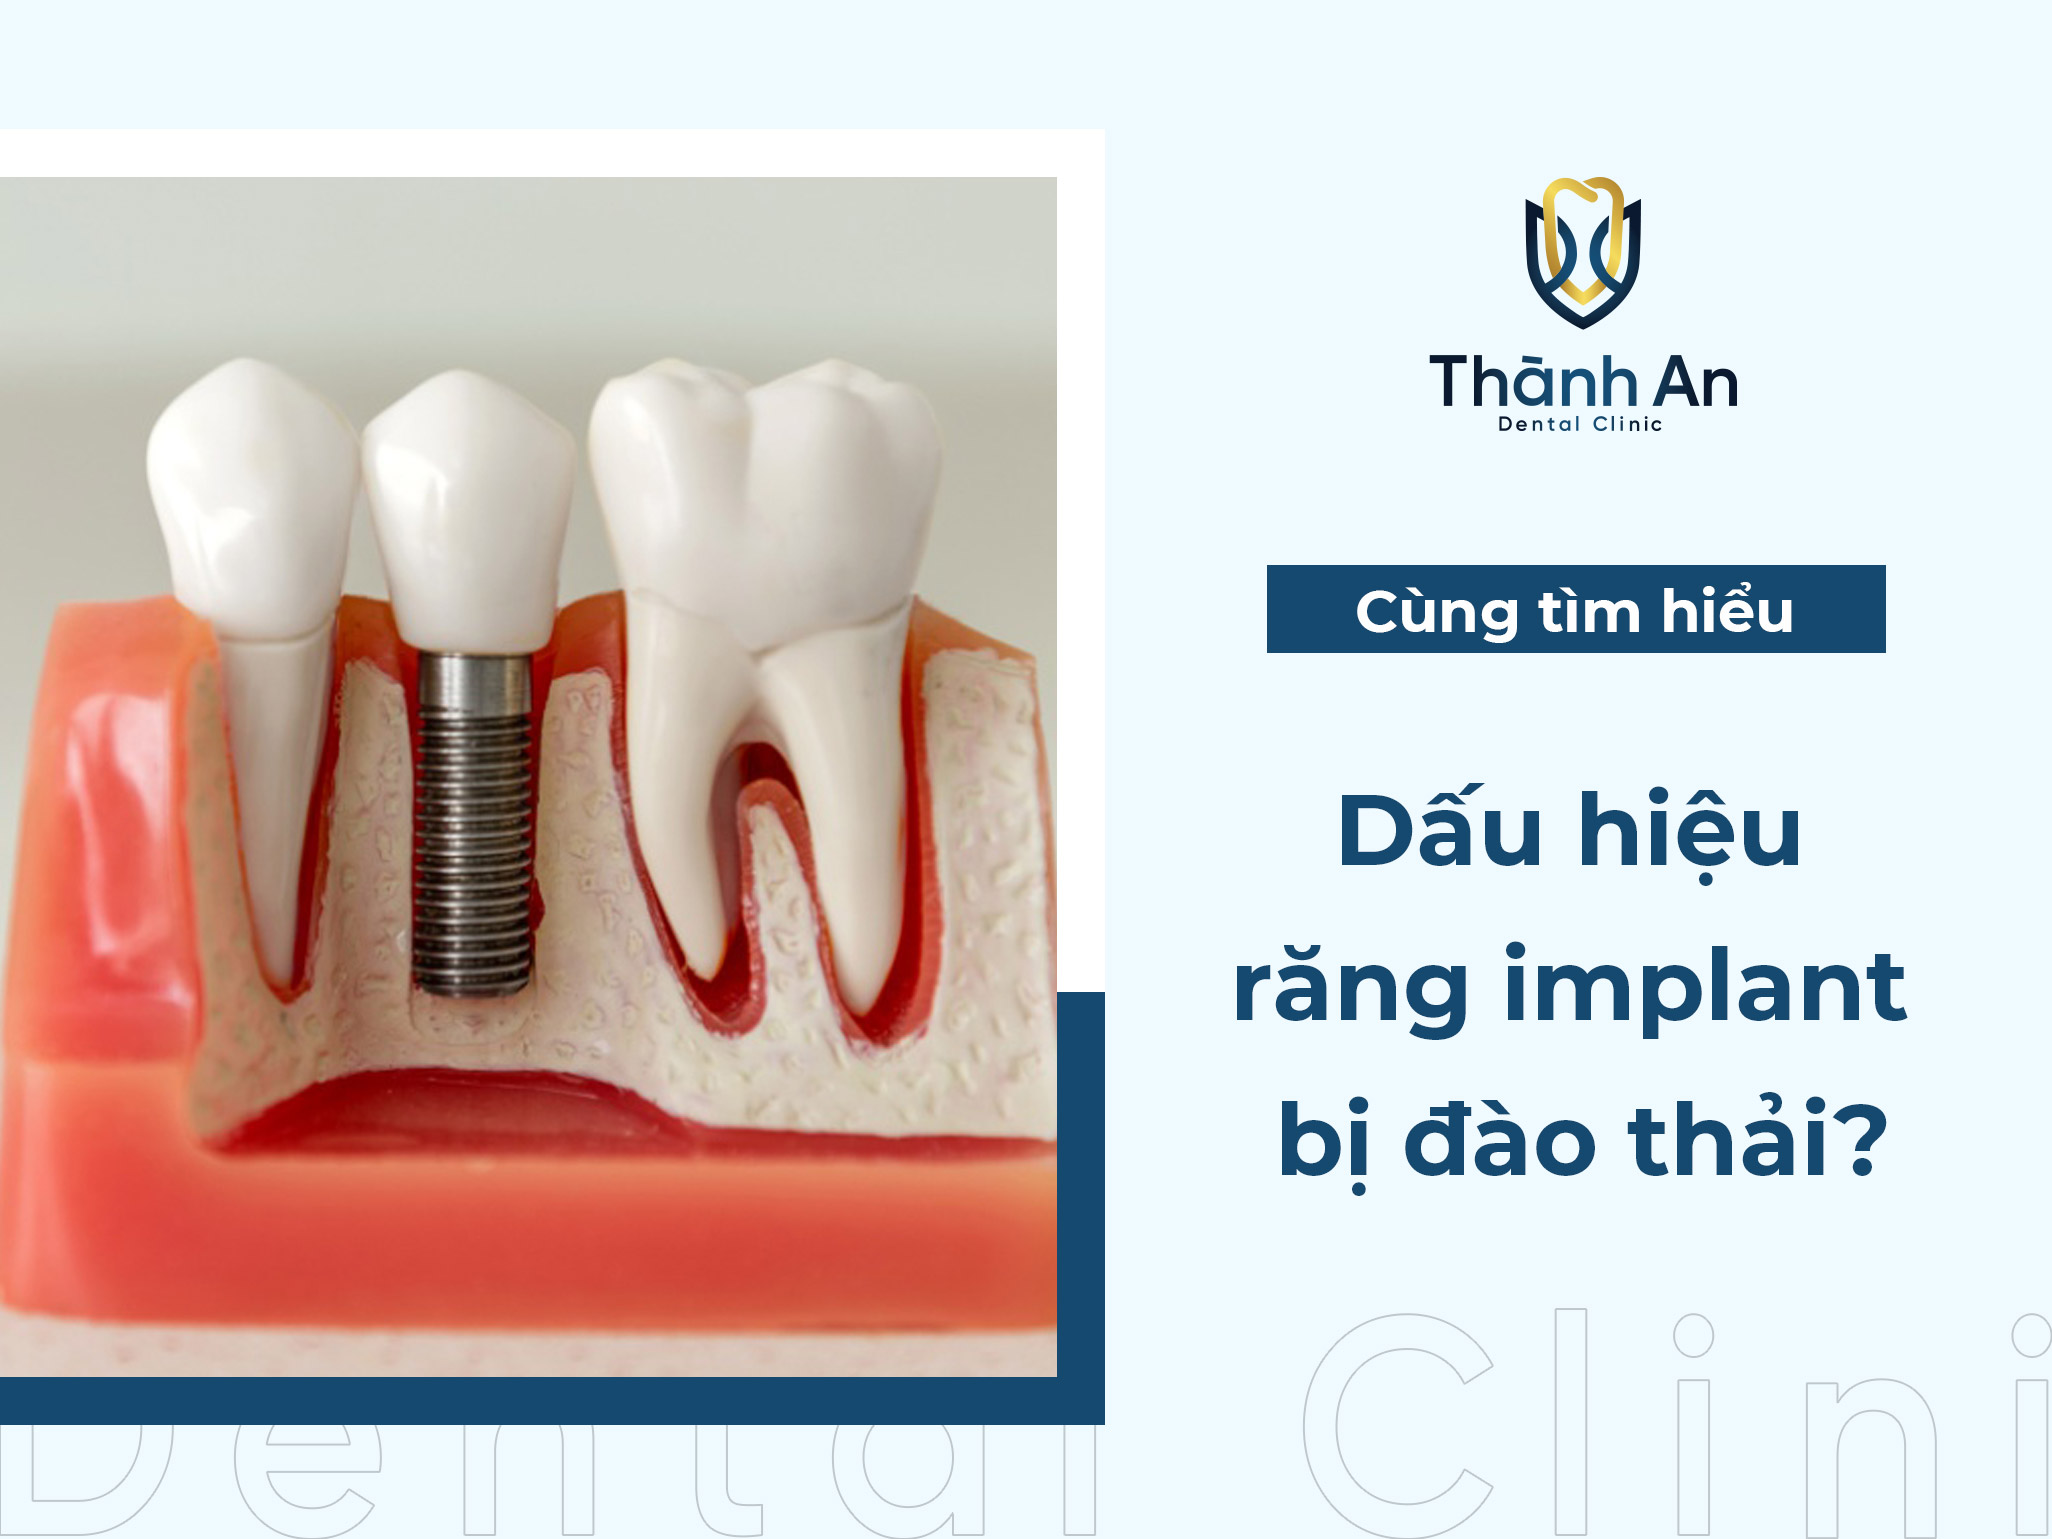 Răng implant bị đào thải: Dấu hiệu nhận biết và cách xử lý